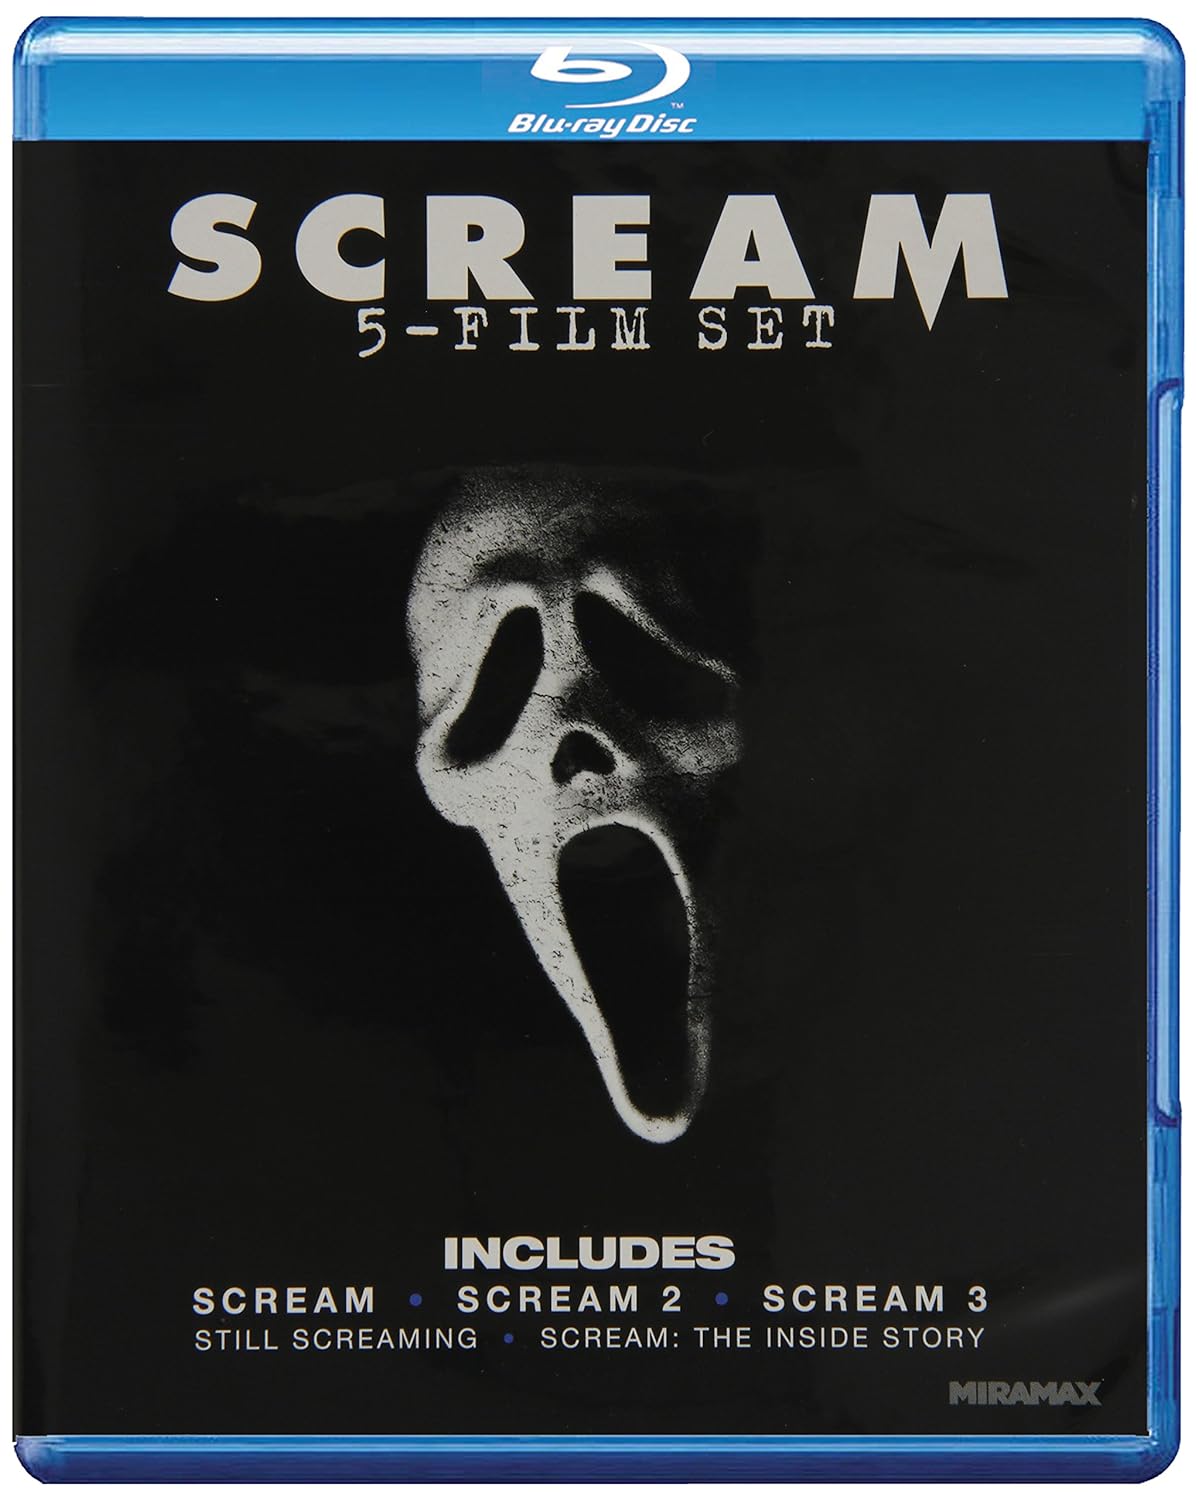 Scream: 5-Film Set